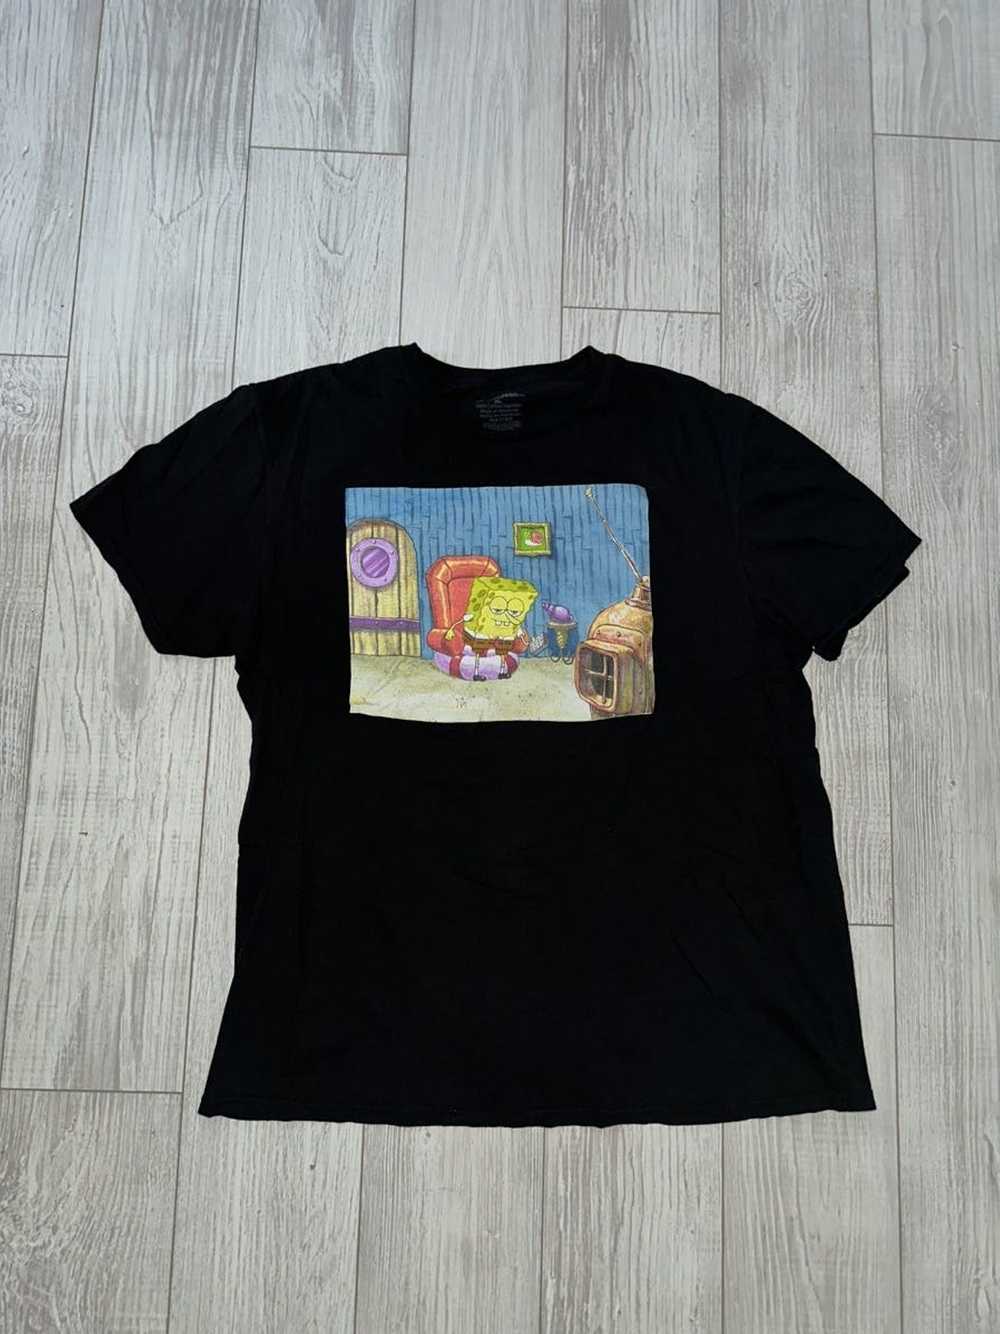 Nickelodeon Nickelodeon SpongeBob Shirt - Gem